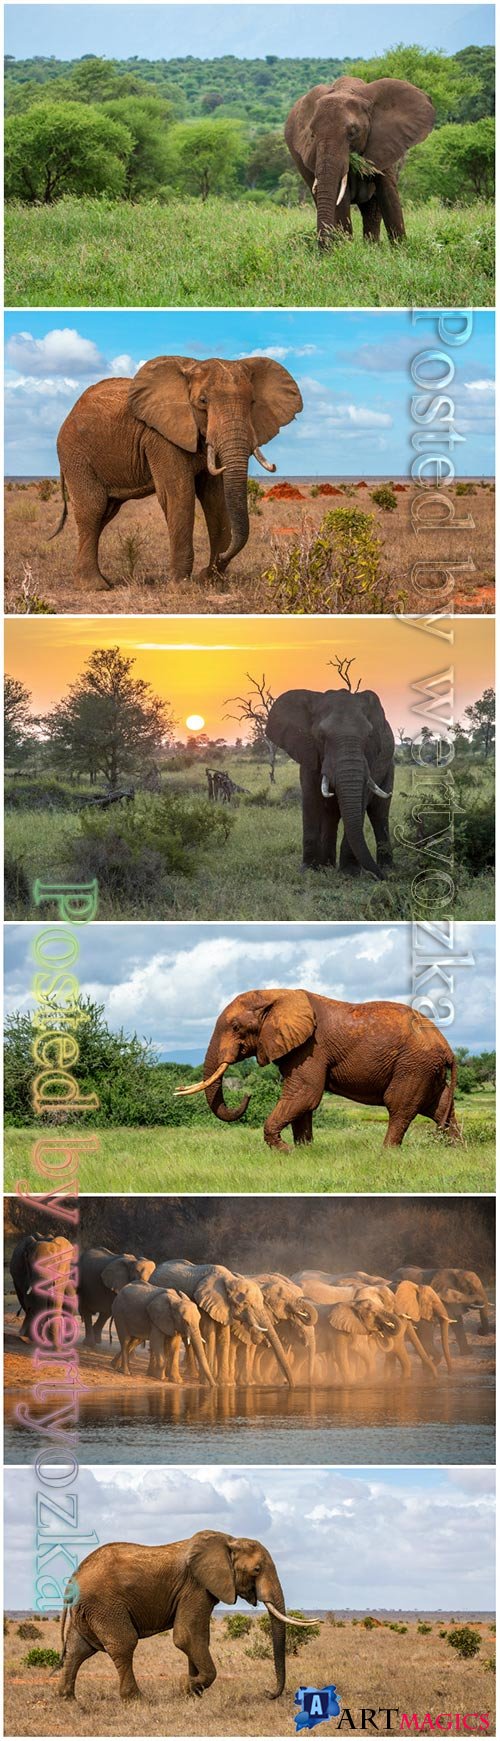 Elephant beautiful stock photo